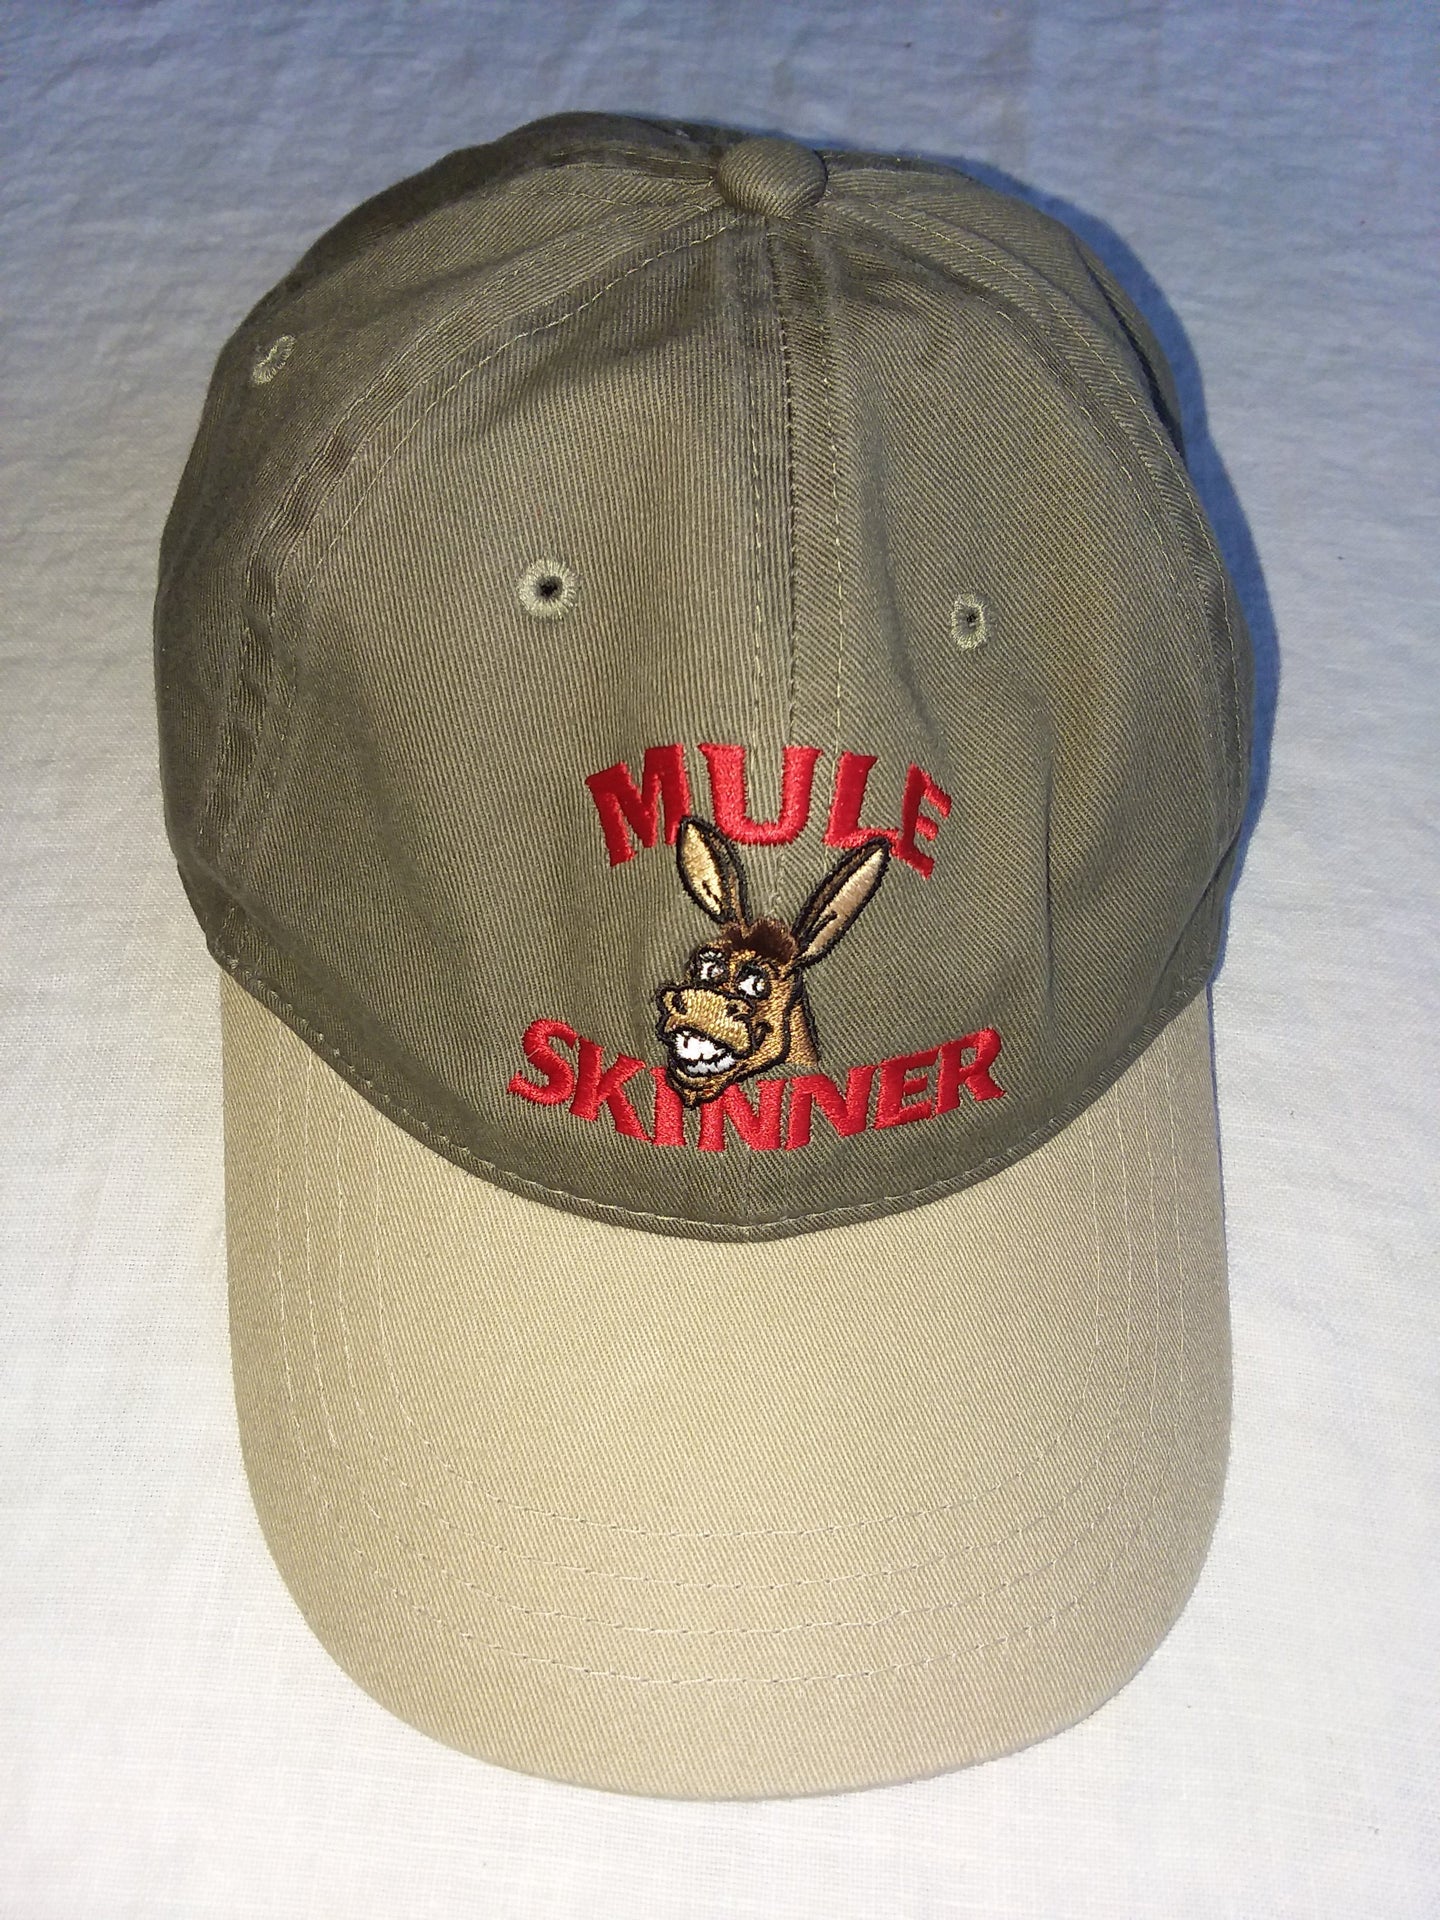 Hat - Mule Skinner